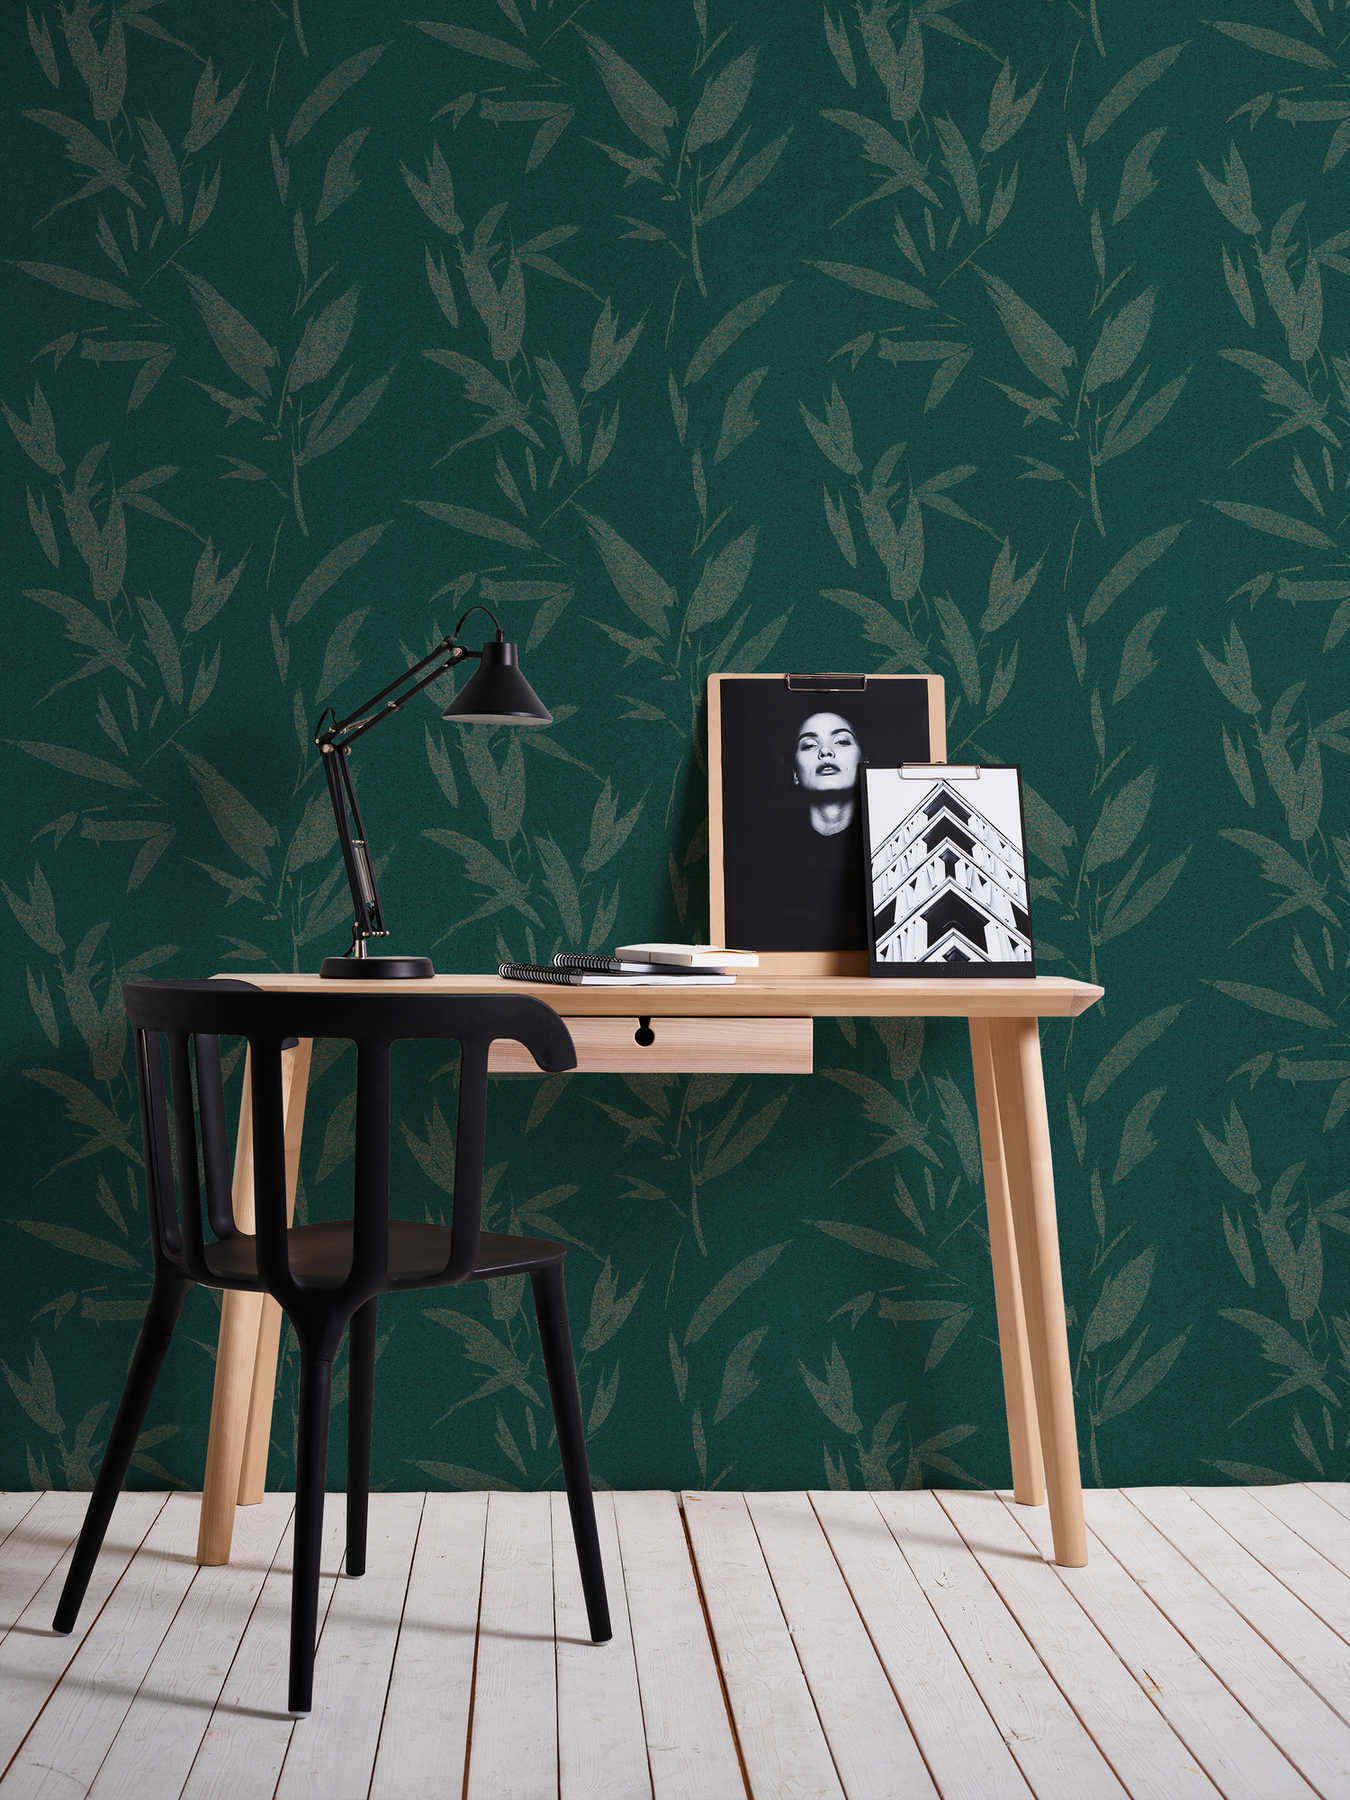             Papel pintado abstracto de hojas con óptica textil - verde, beige
        